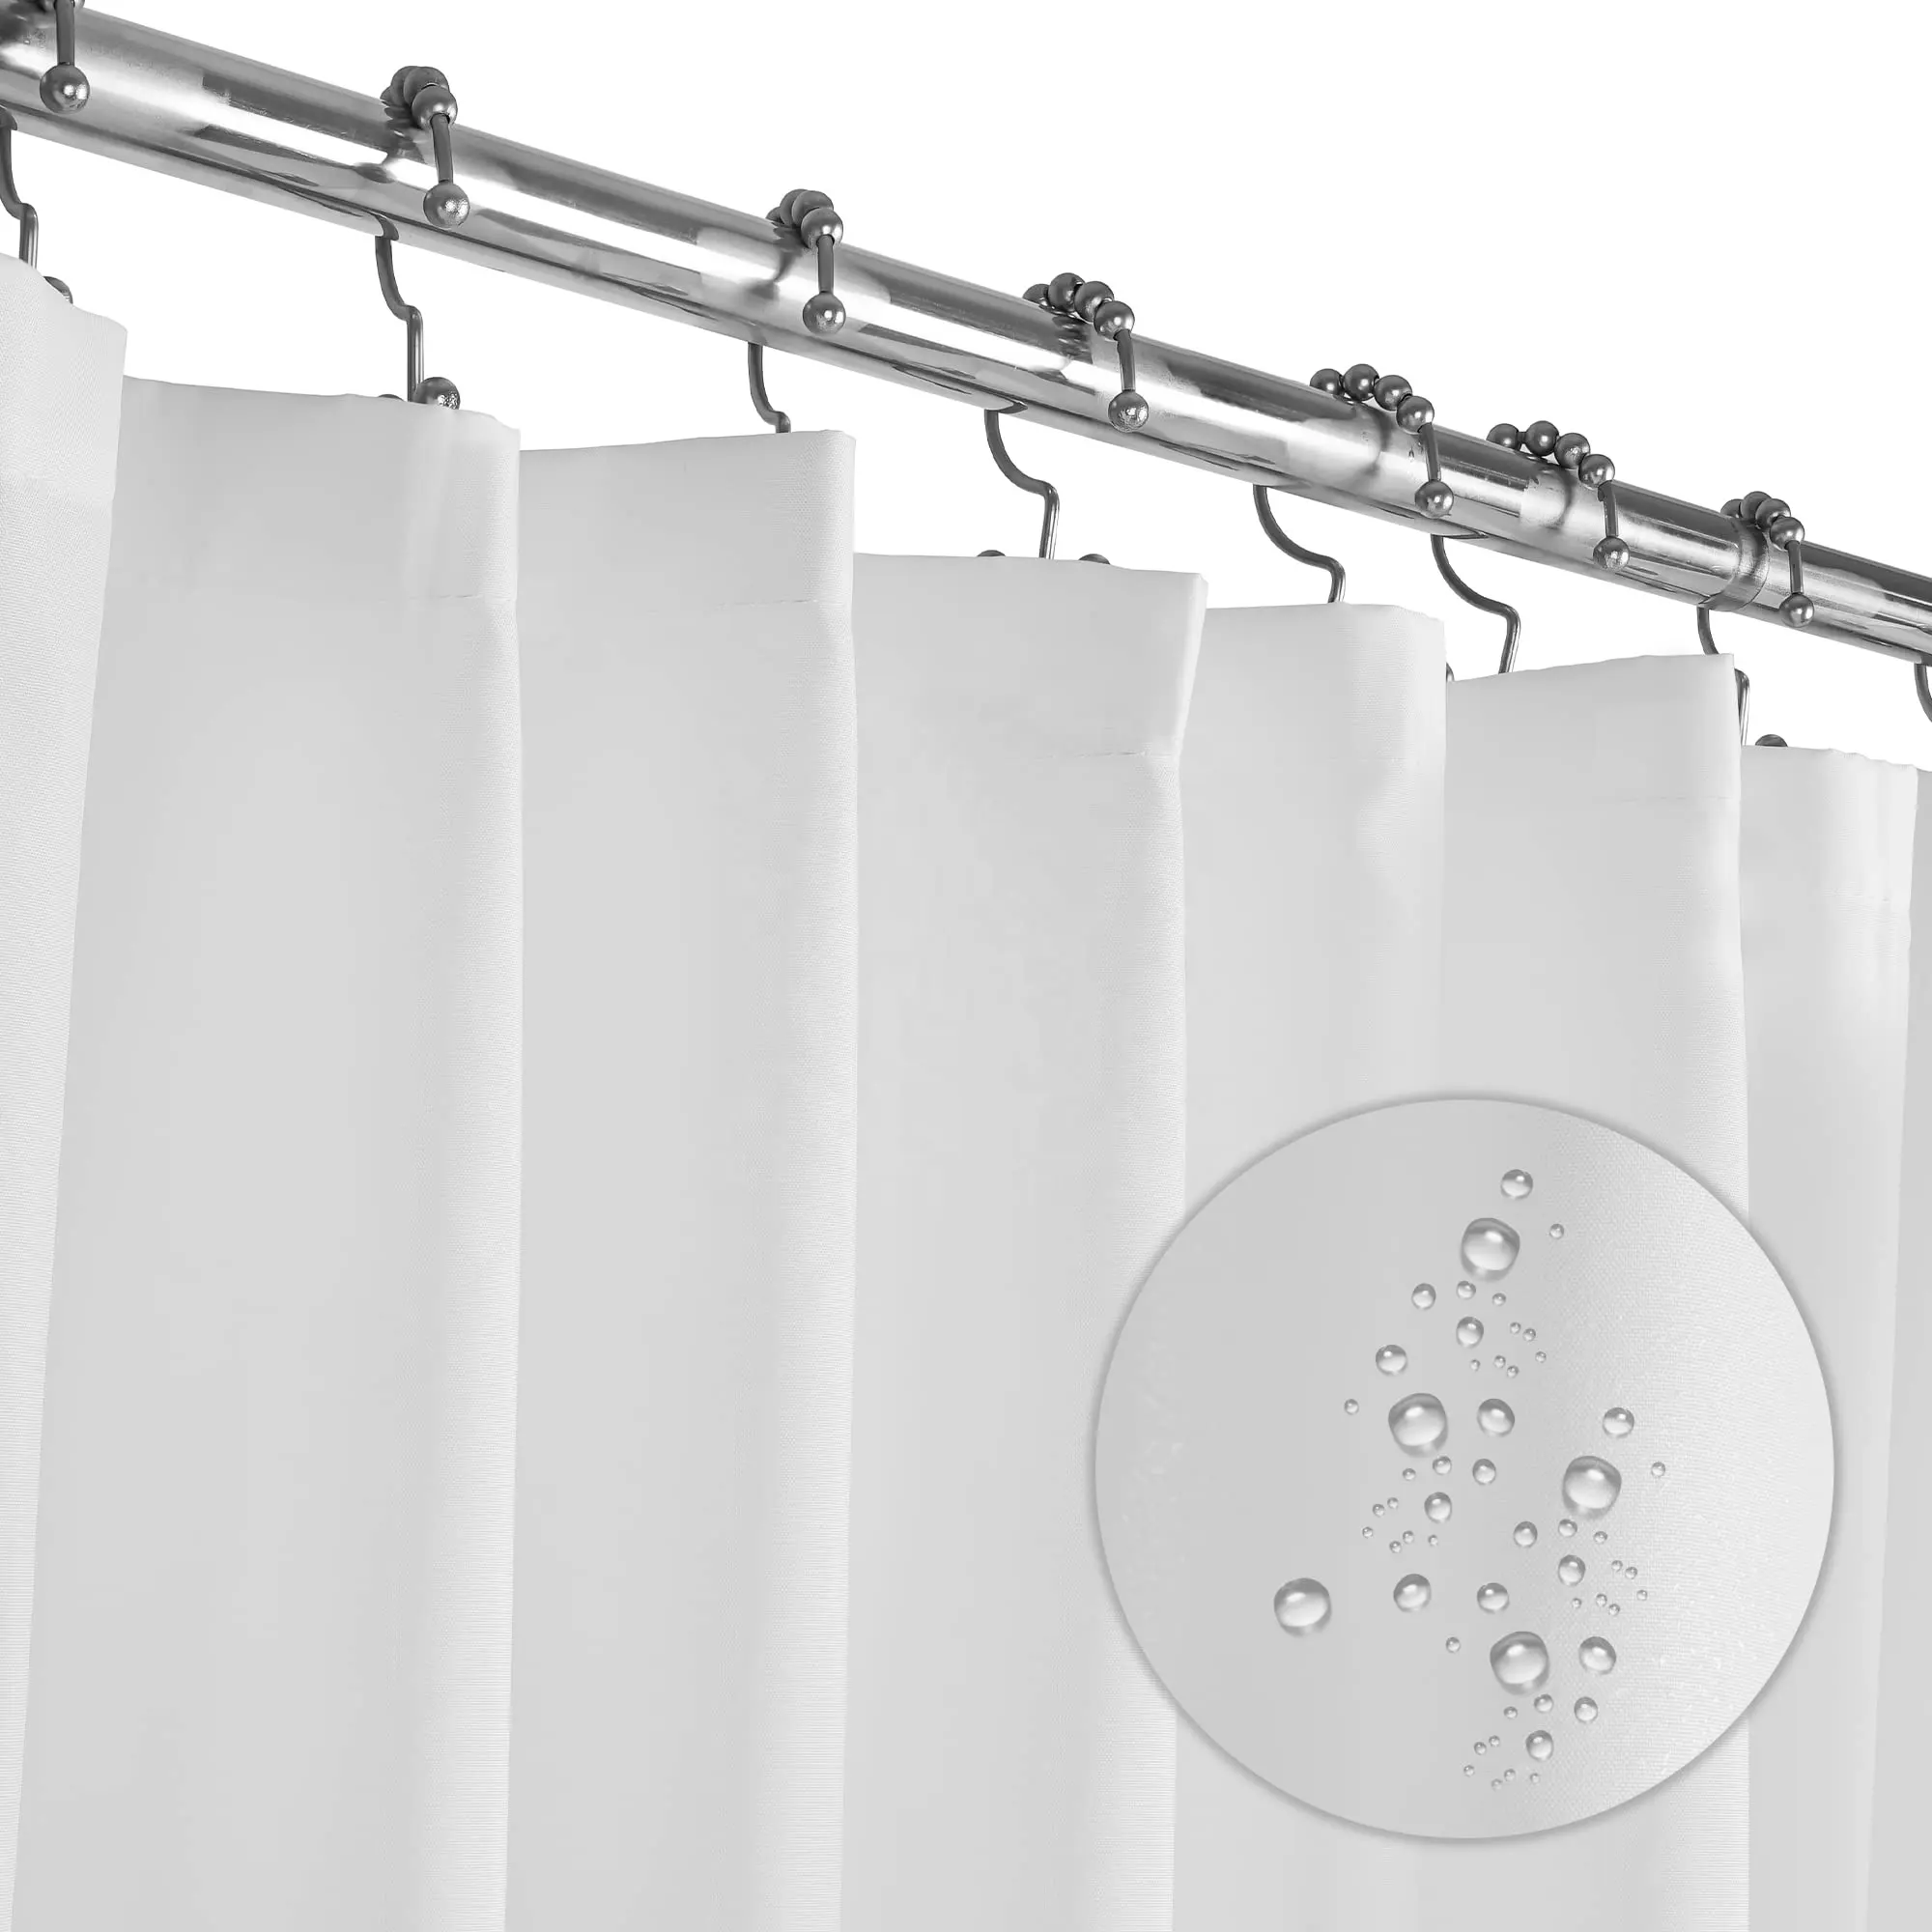 ستائر استحمام بيضاء قابلة للغسل في ماكينة فندقية من القماش الناعم مقاس 72 × 84 بوصة للبيع بالجملة